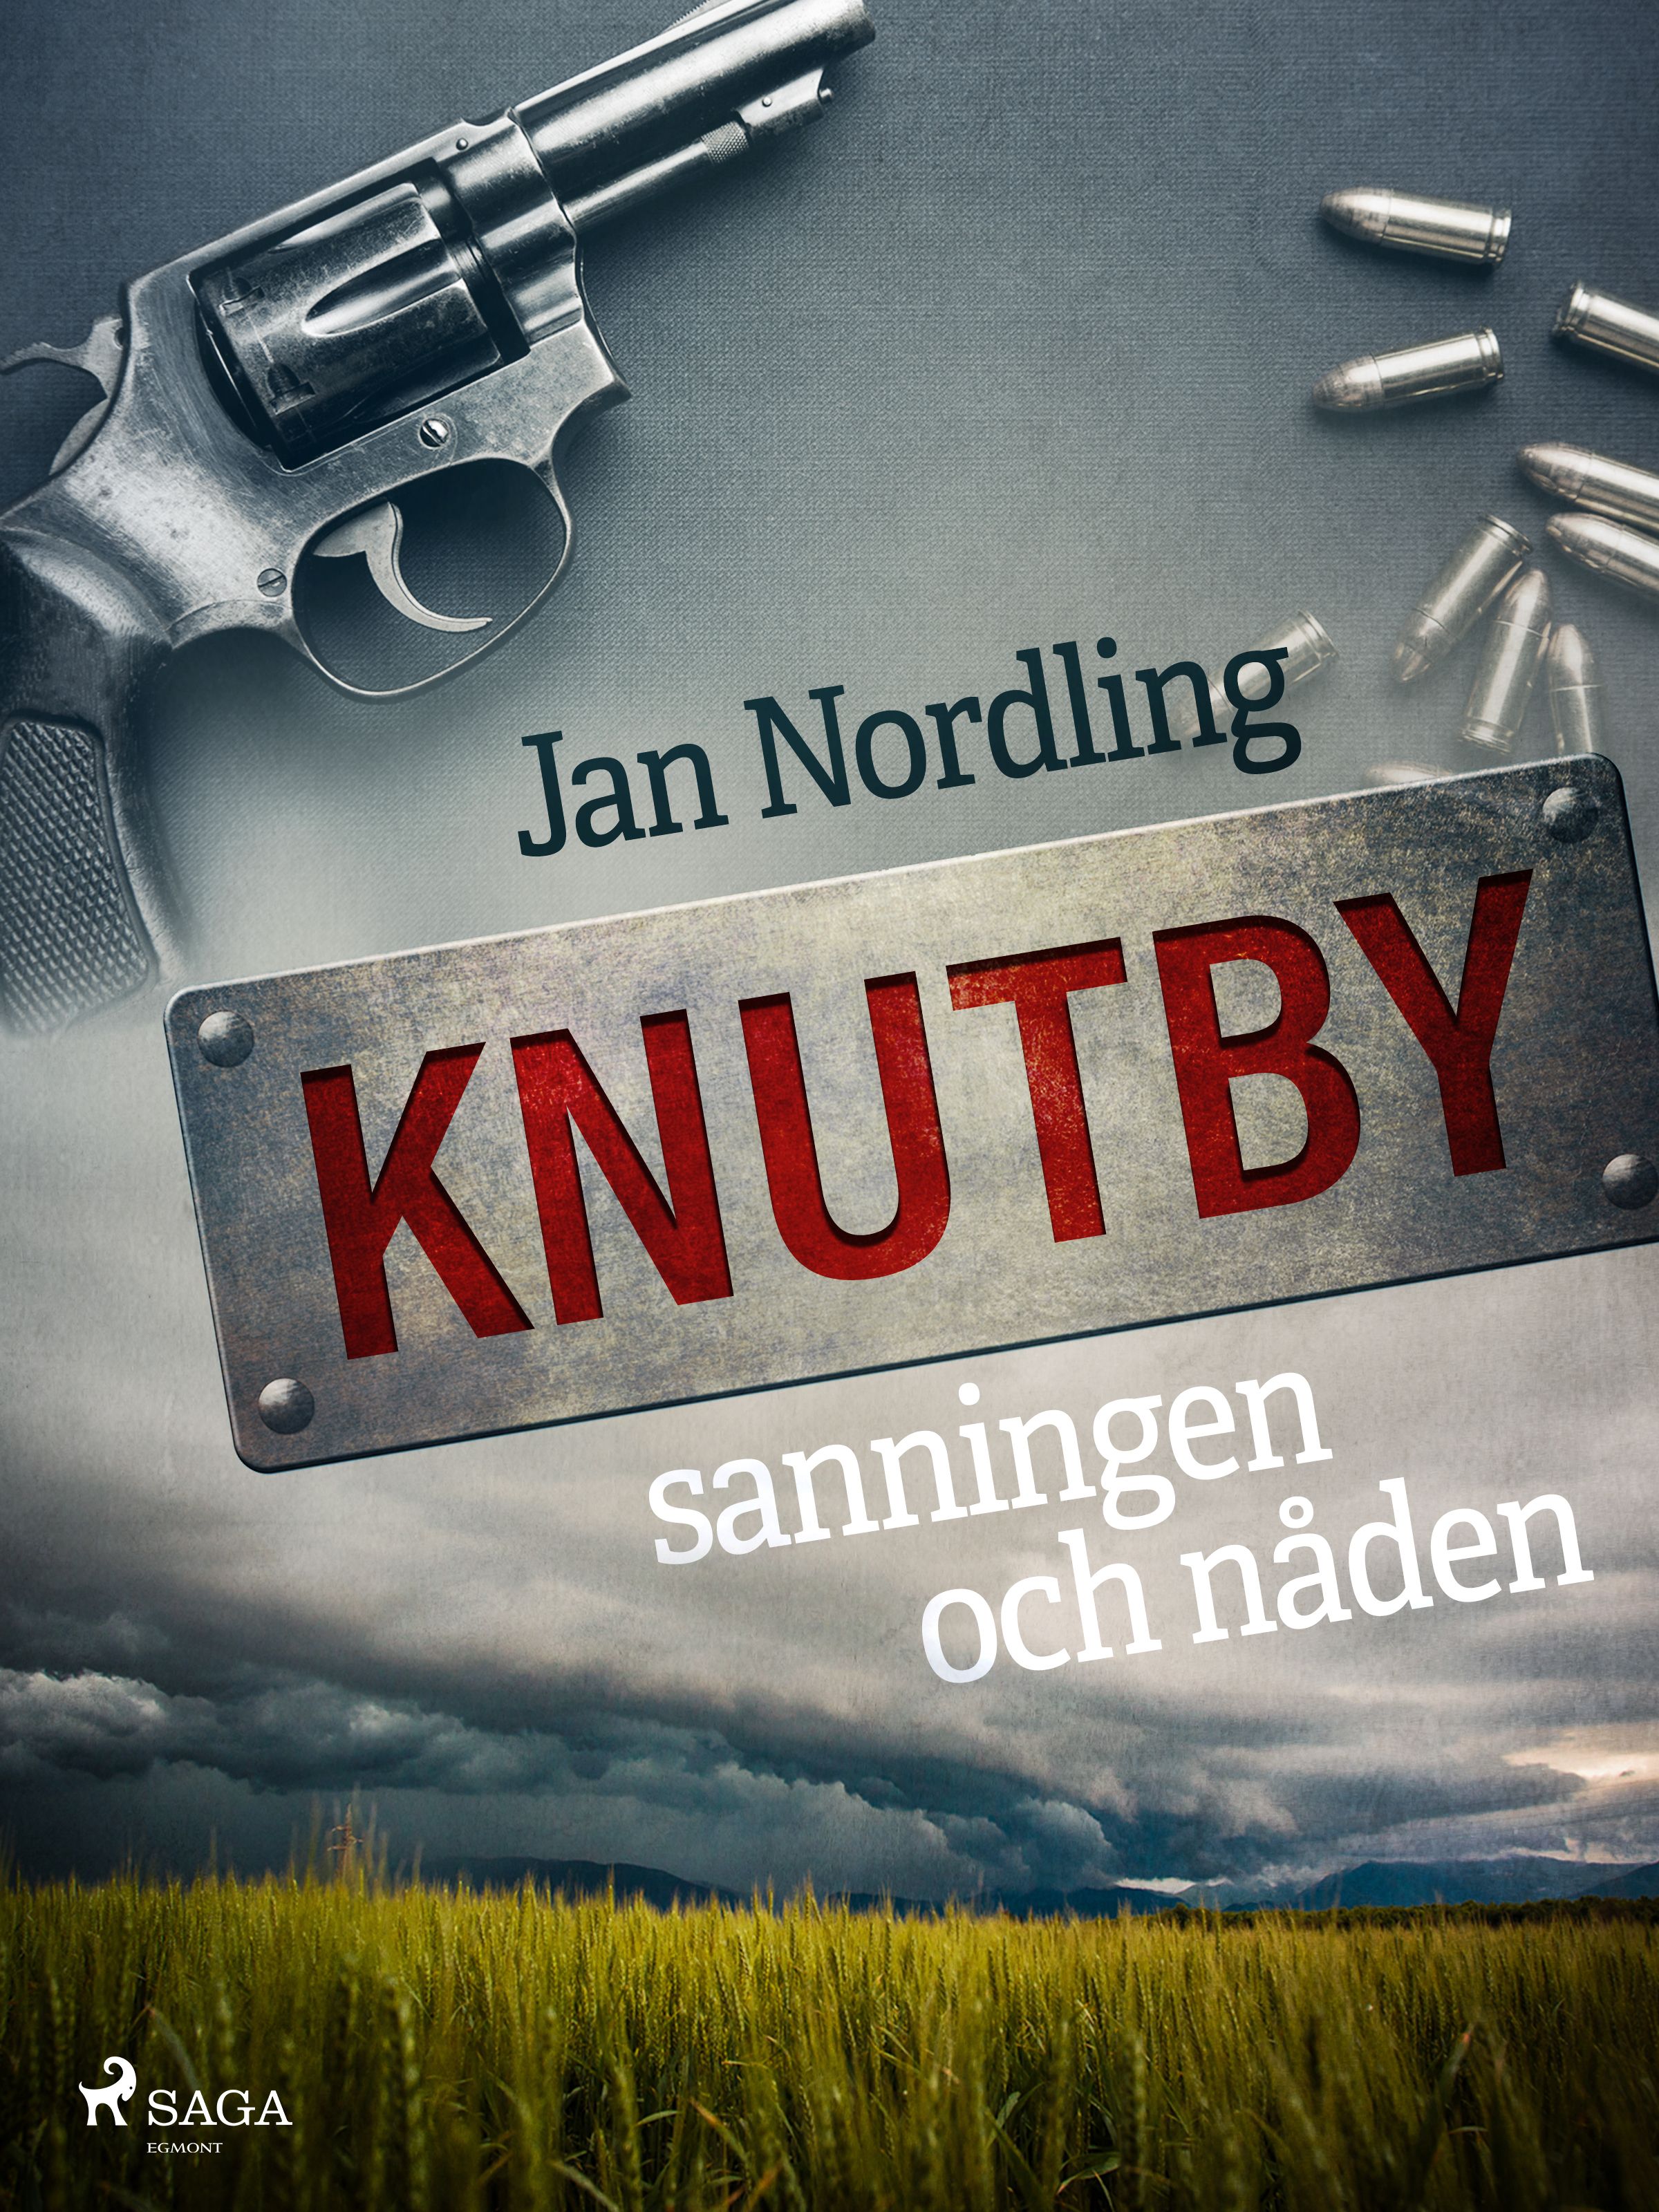 Knutby – sanningen och nåden, e-bog af Jan Nordling